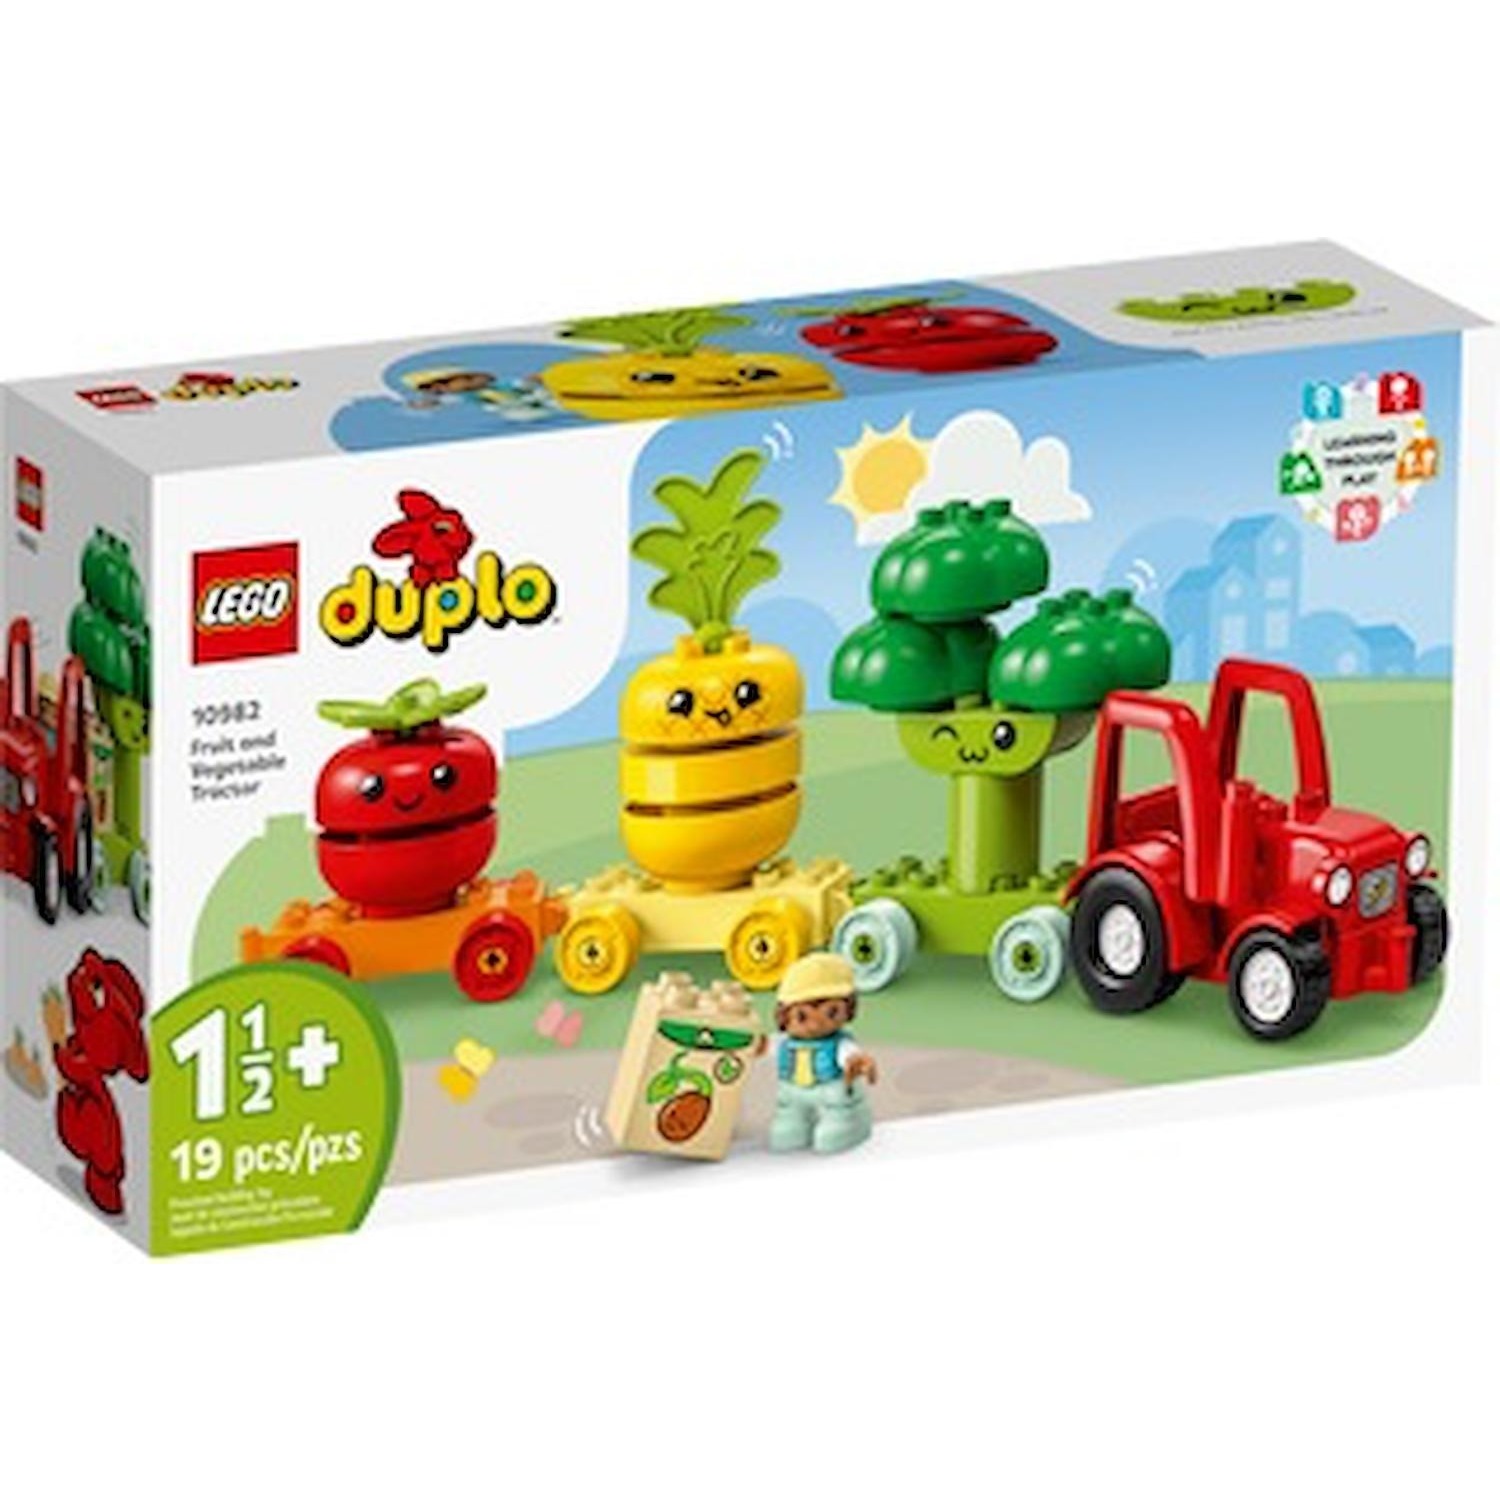 Immagine per Lego Duplo Il trattore di frutta e verdura da DIMOStore